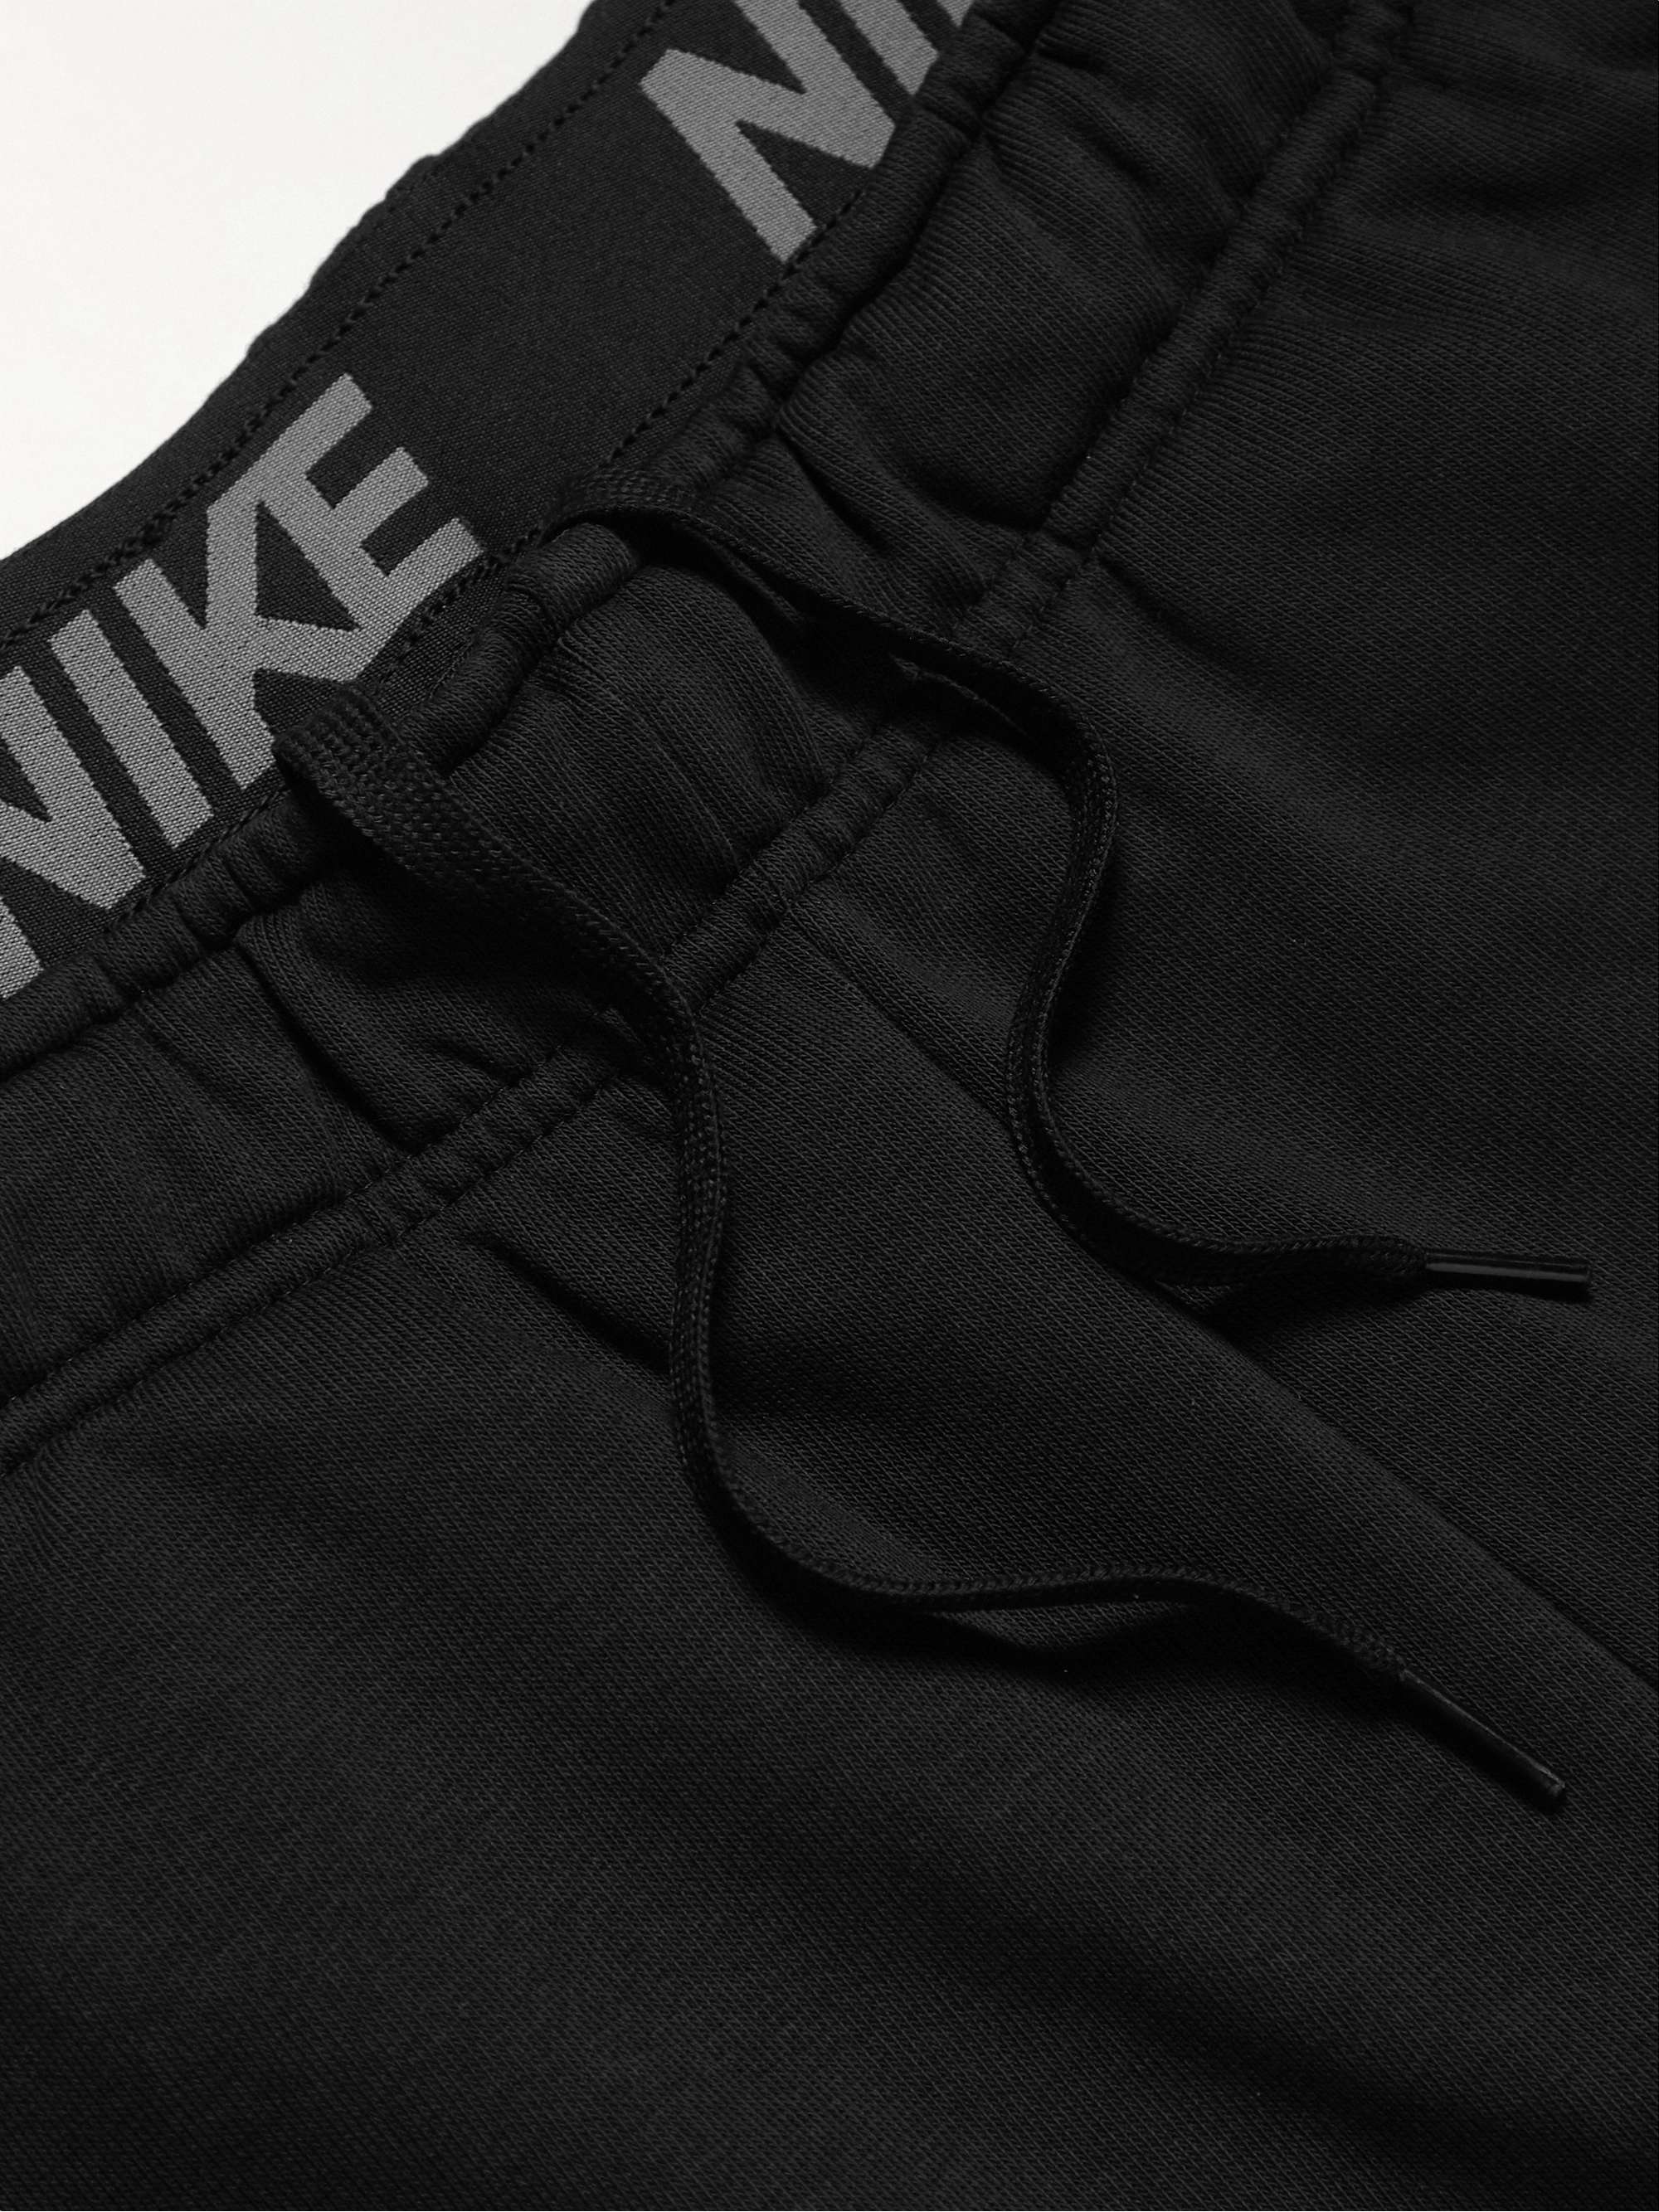 NIKE TRAINING Slim-Fit Tapered Logo-Print Dri-FIT Sweatpants